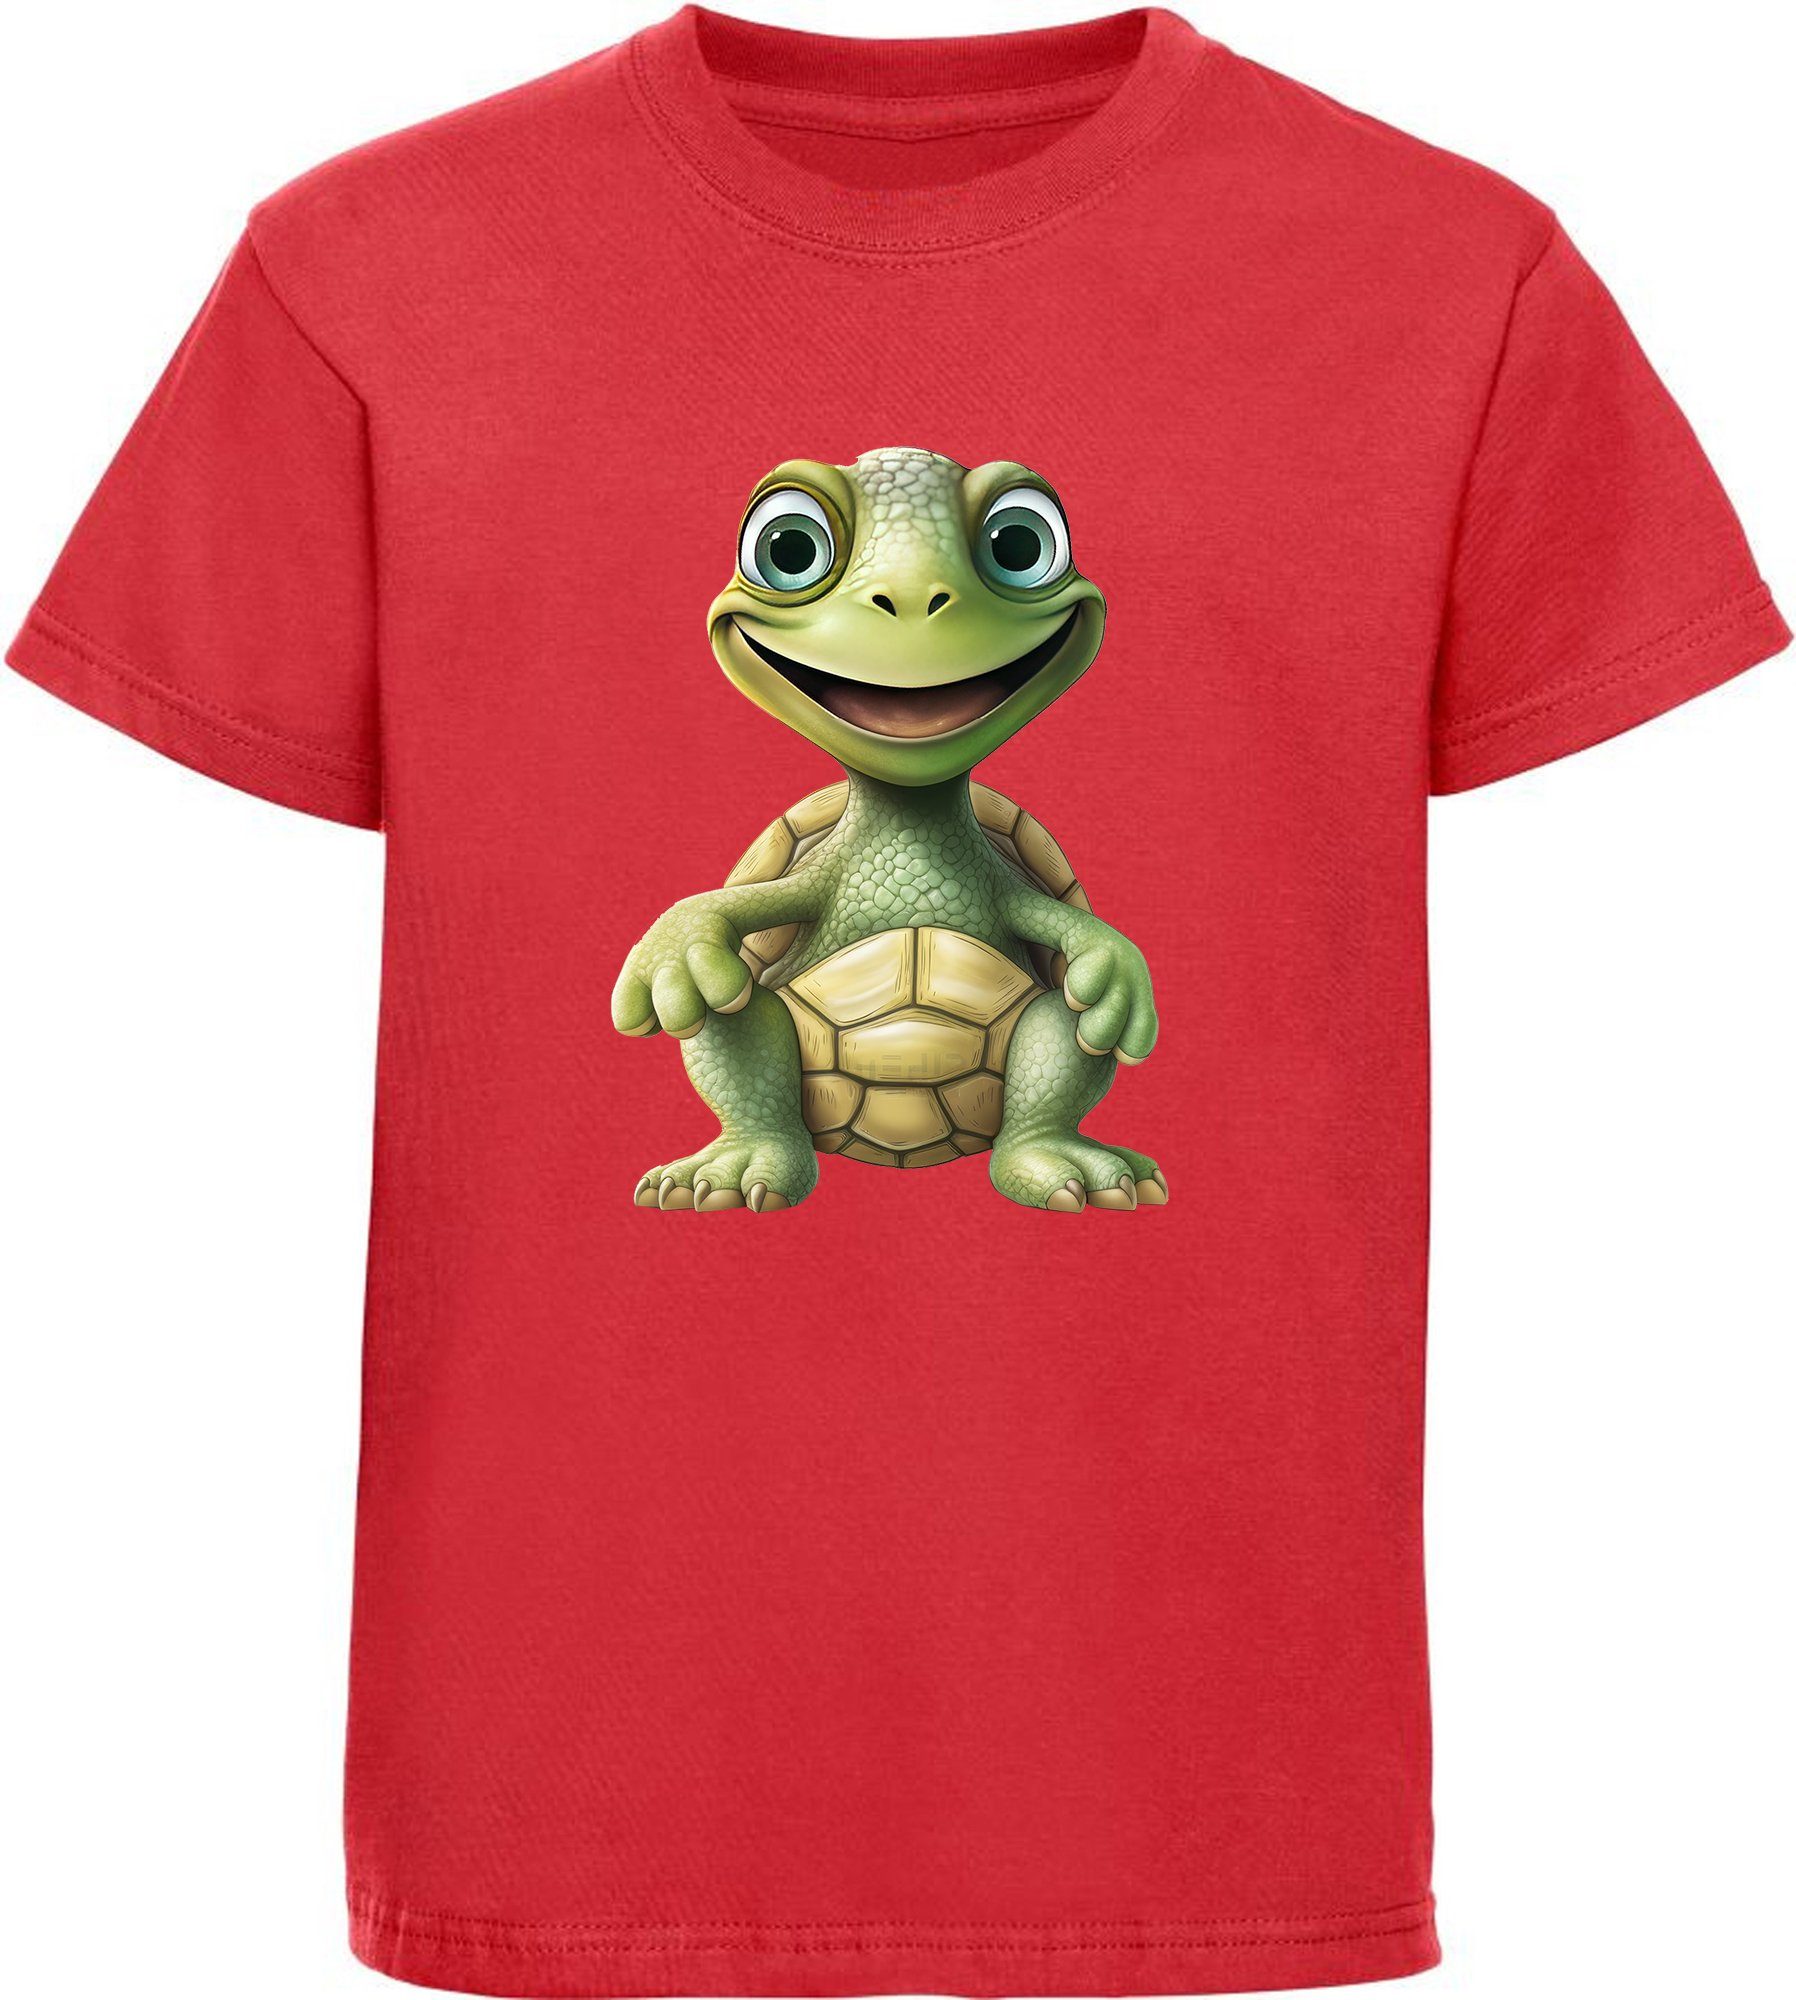 MyDesign24 T-Shirt Kinder Wildtier Print Shirt bedruckt - Baby Schildkröte Baumwollshirt mit Aufdruck, i279 rot